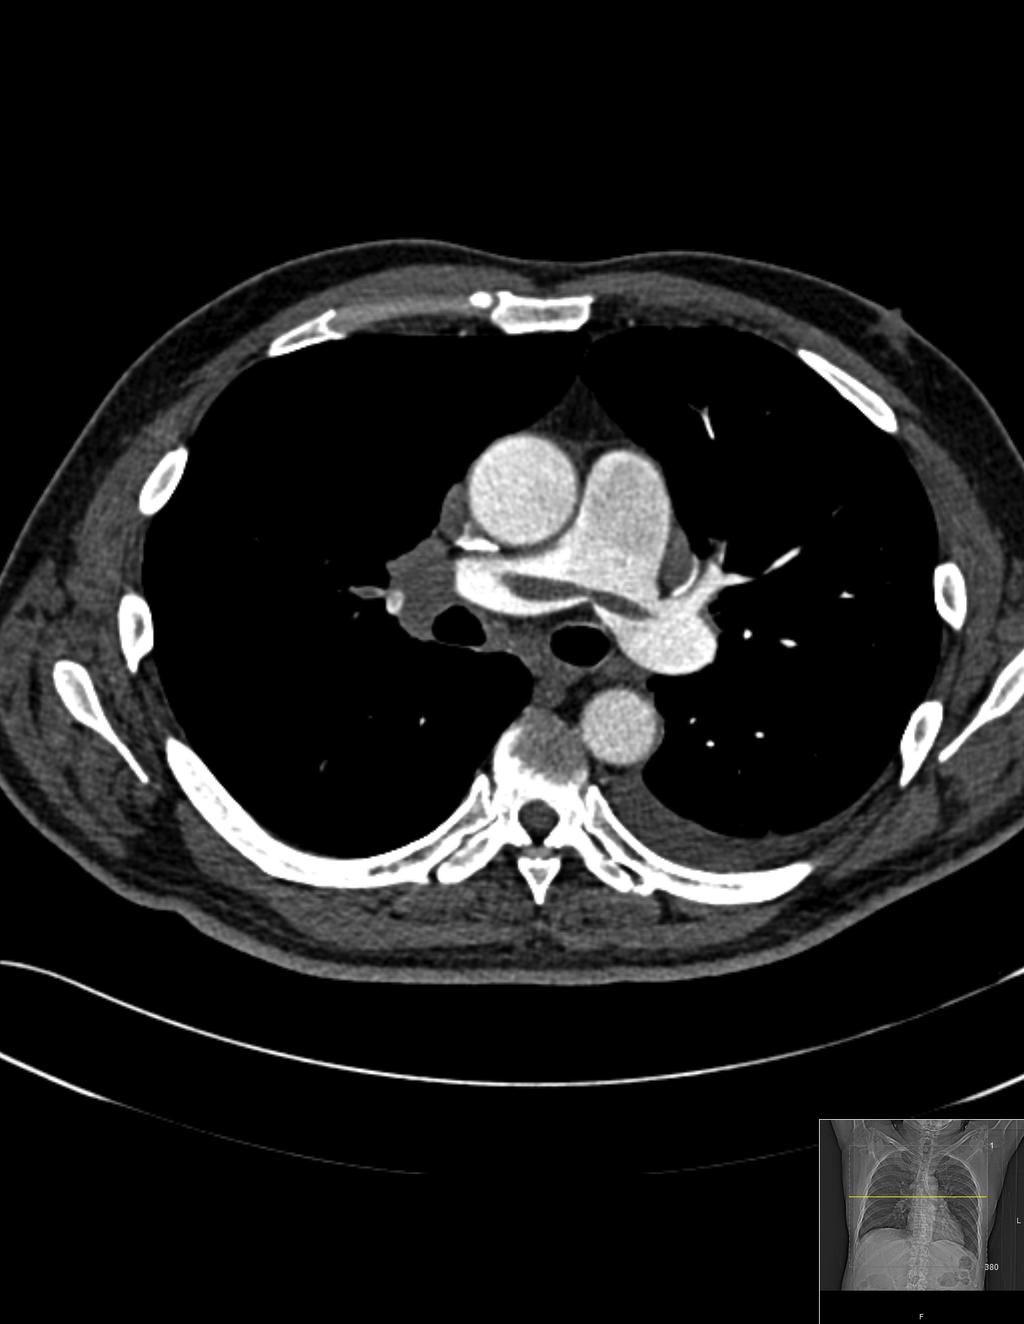 Case 3 CT pulmonary angiogram demonstrating saddle embolus, seen